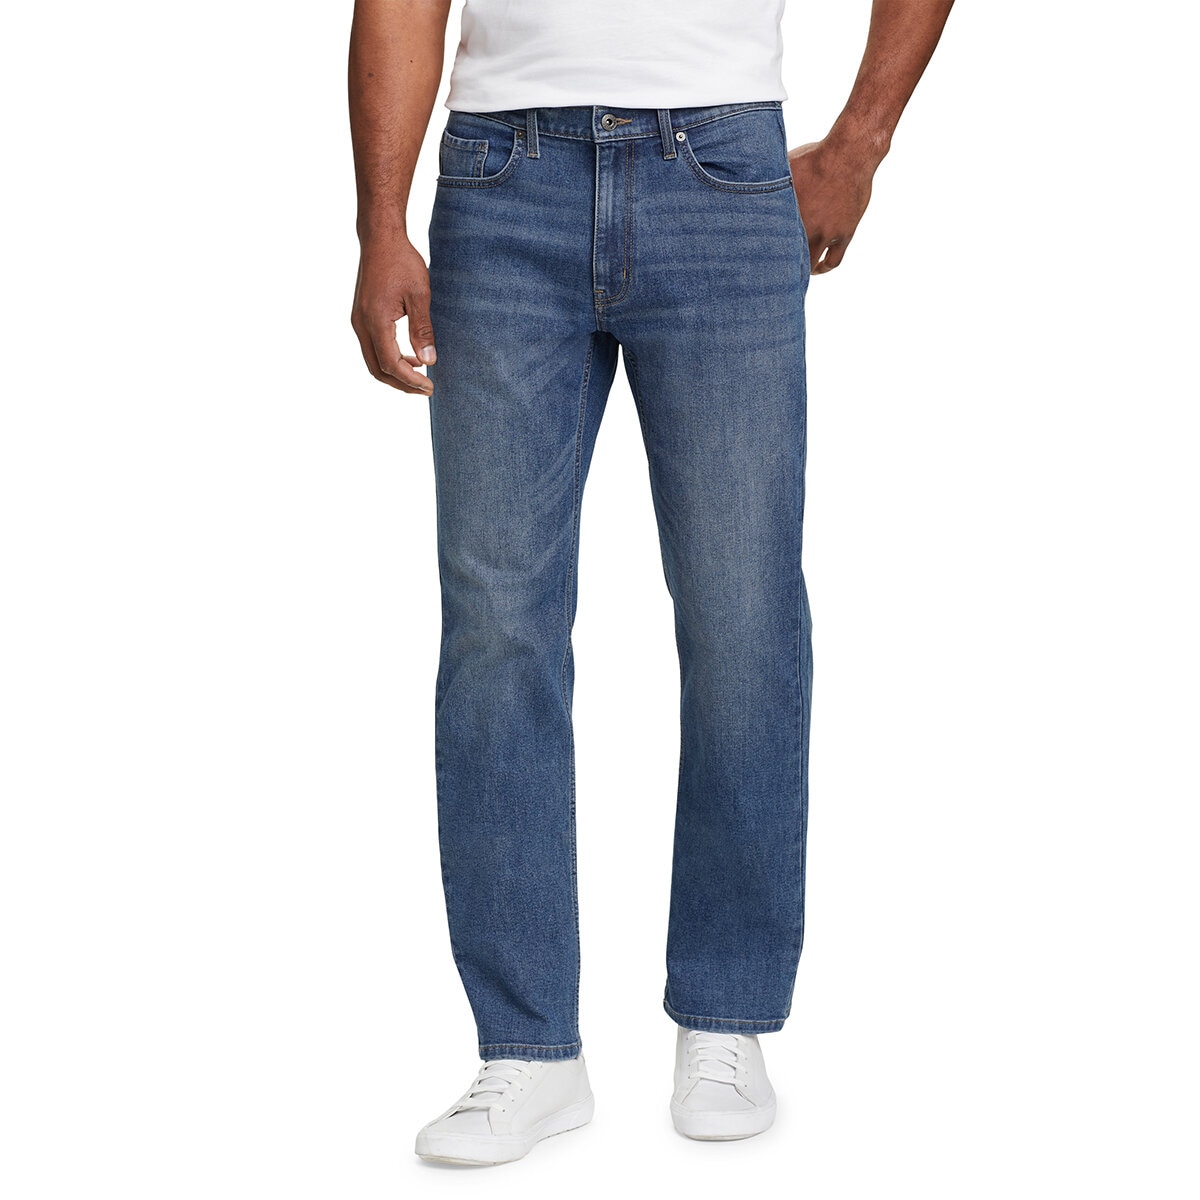 Eddie Bauer Jeans para Caballero Varias Tallas y Colores